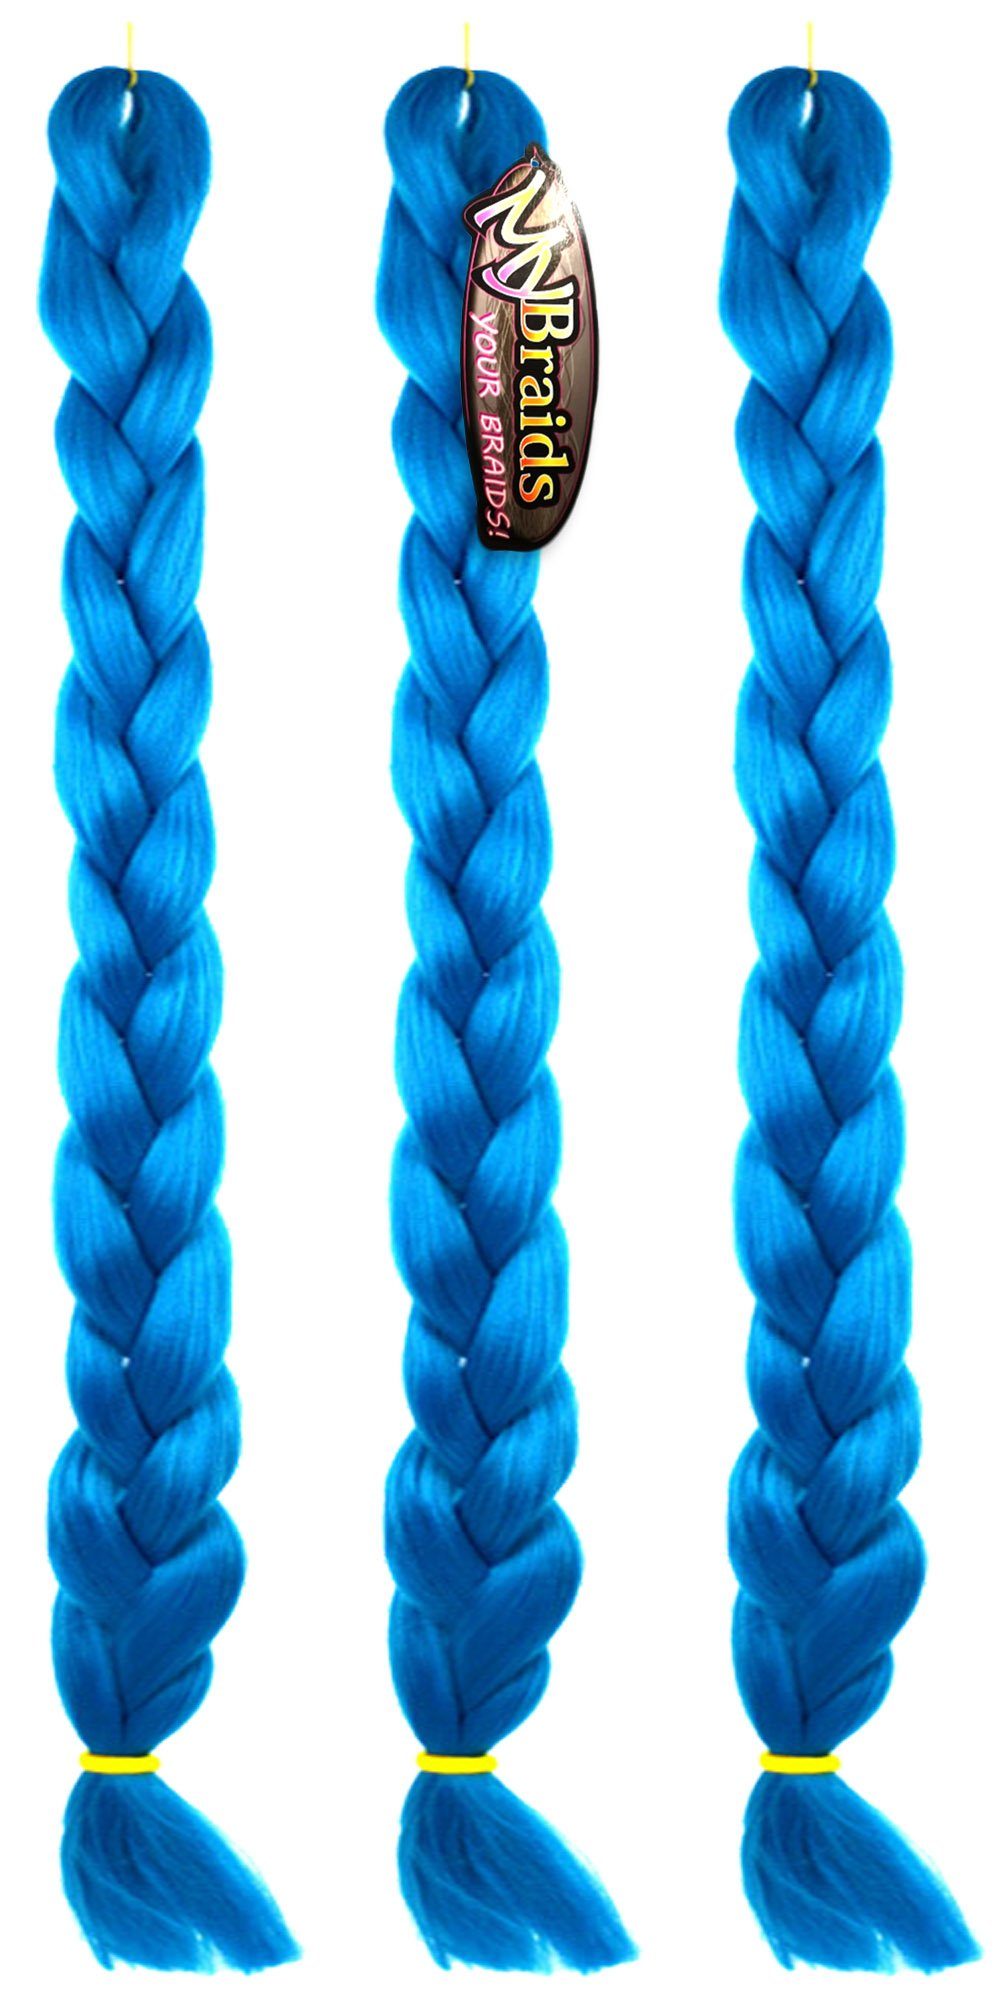 Zöpfe im Enzianblau Braids Pack BRAIDS! Premium MyBraids 30-AY Kunsthaar-Extension Flechthaar 1-farbig mit YOUR Länge 3er 2m